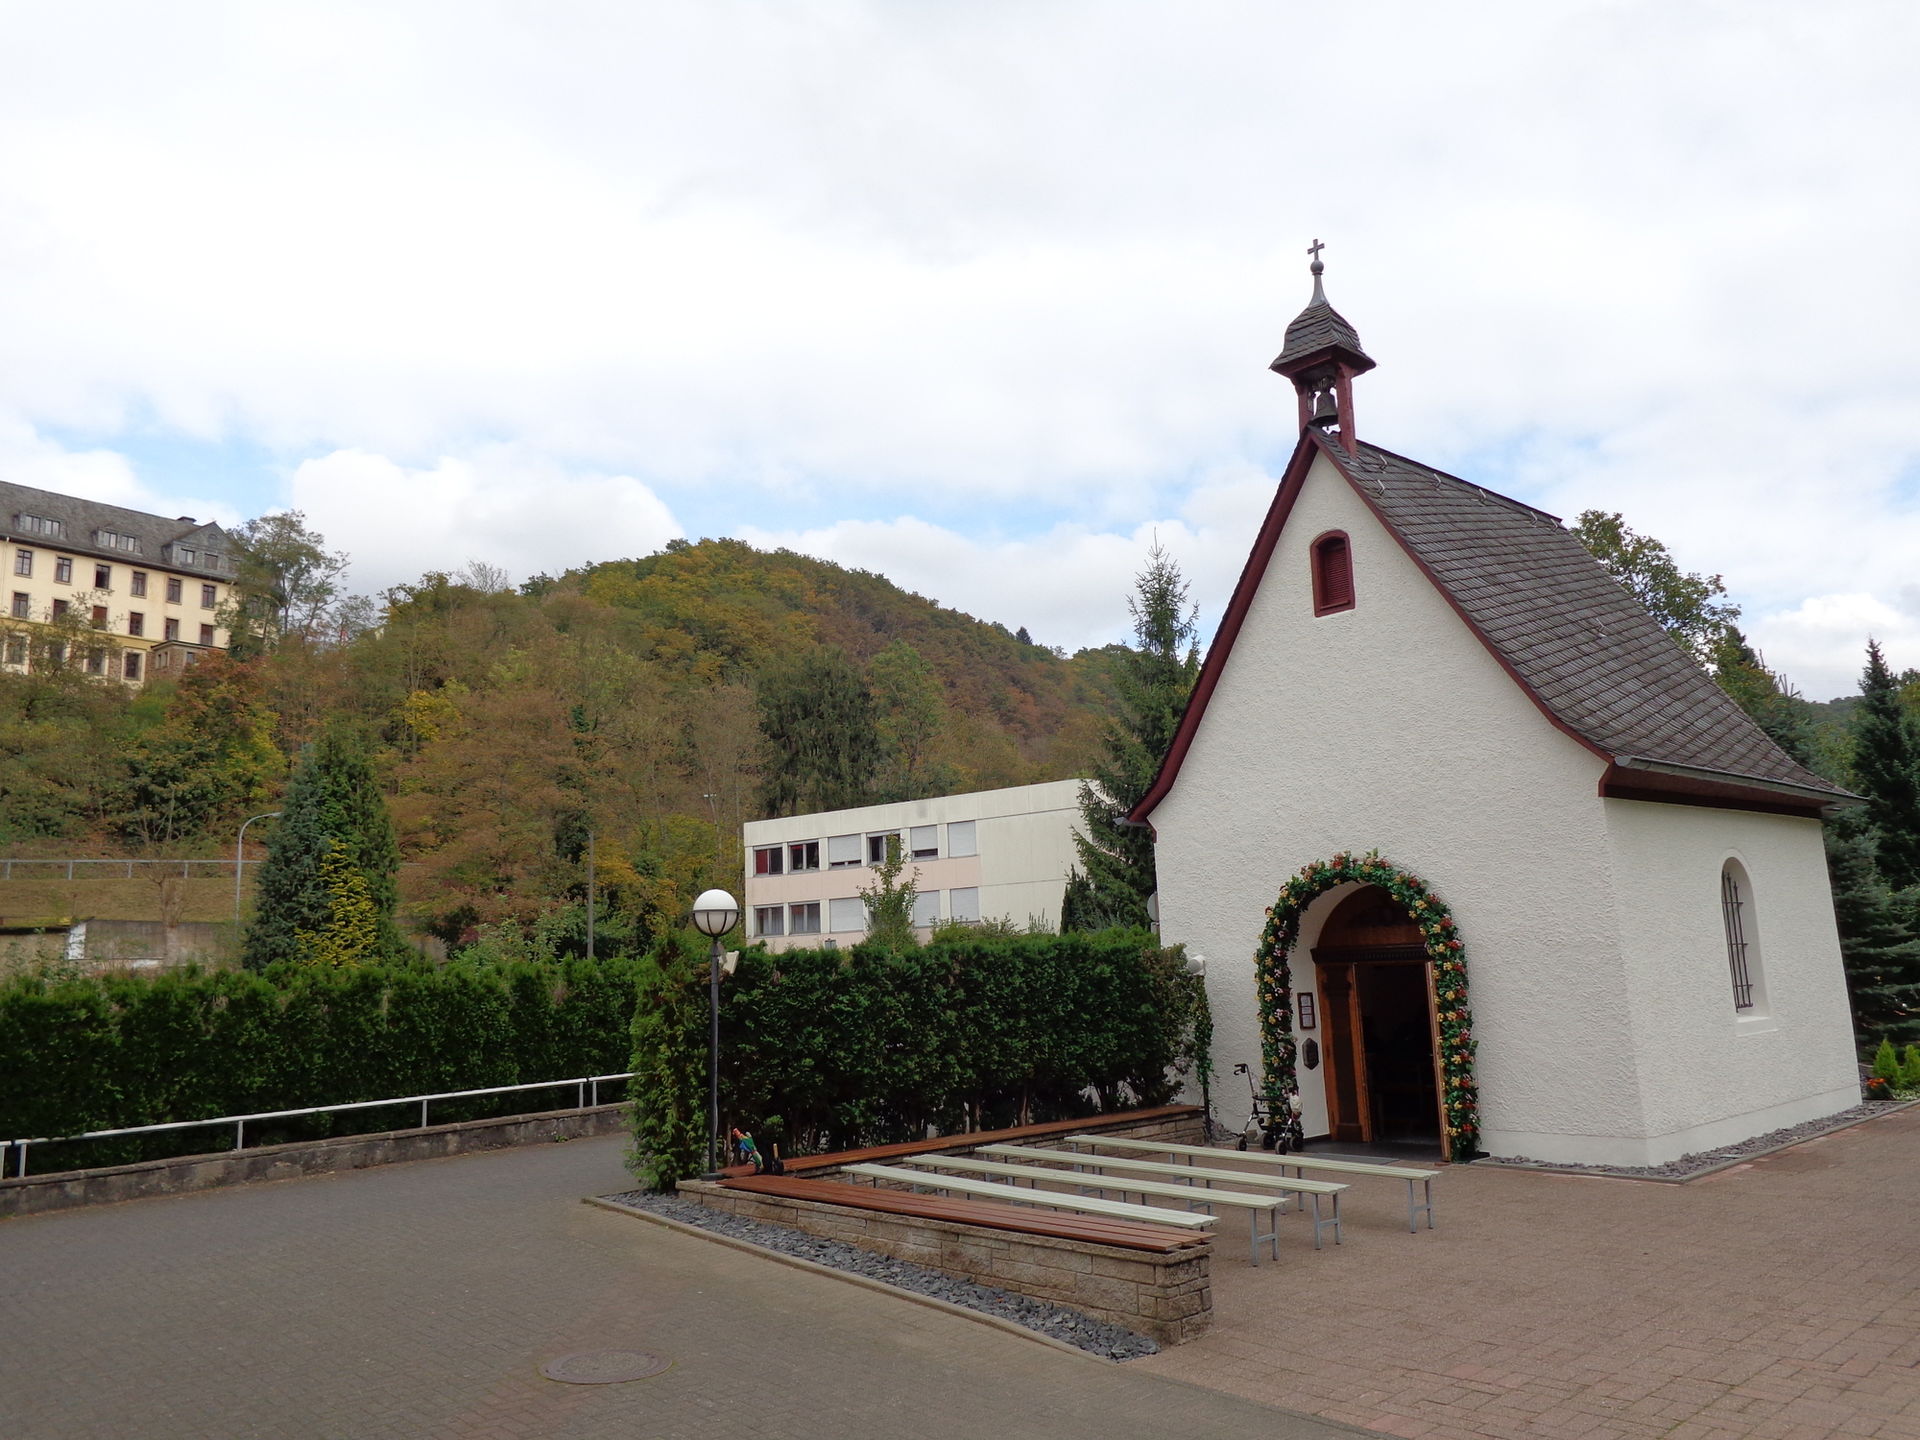 Urheiligtum - Kapelle in Schönstatt